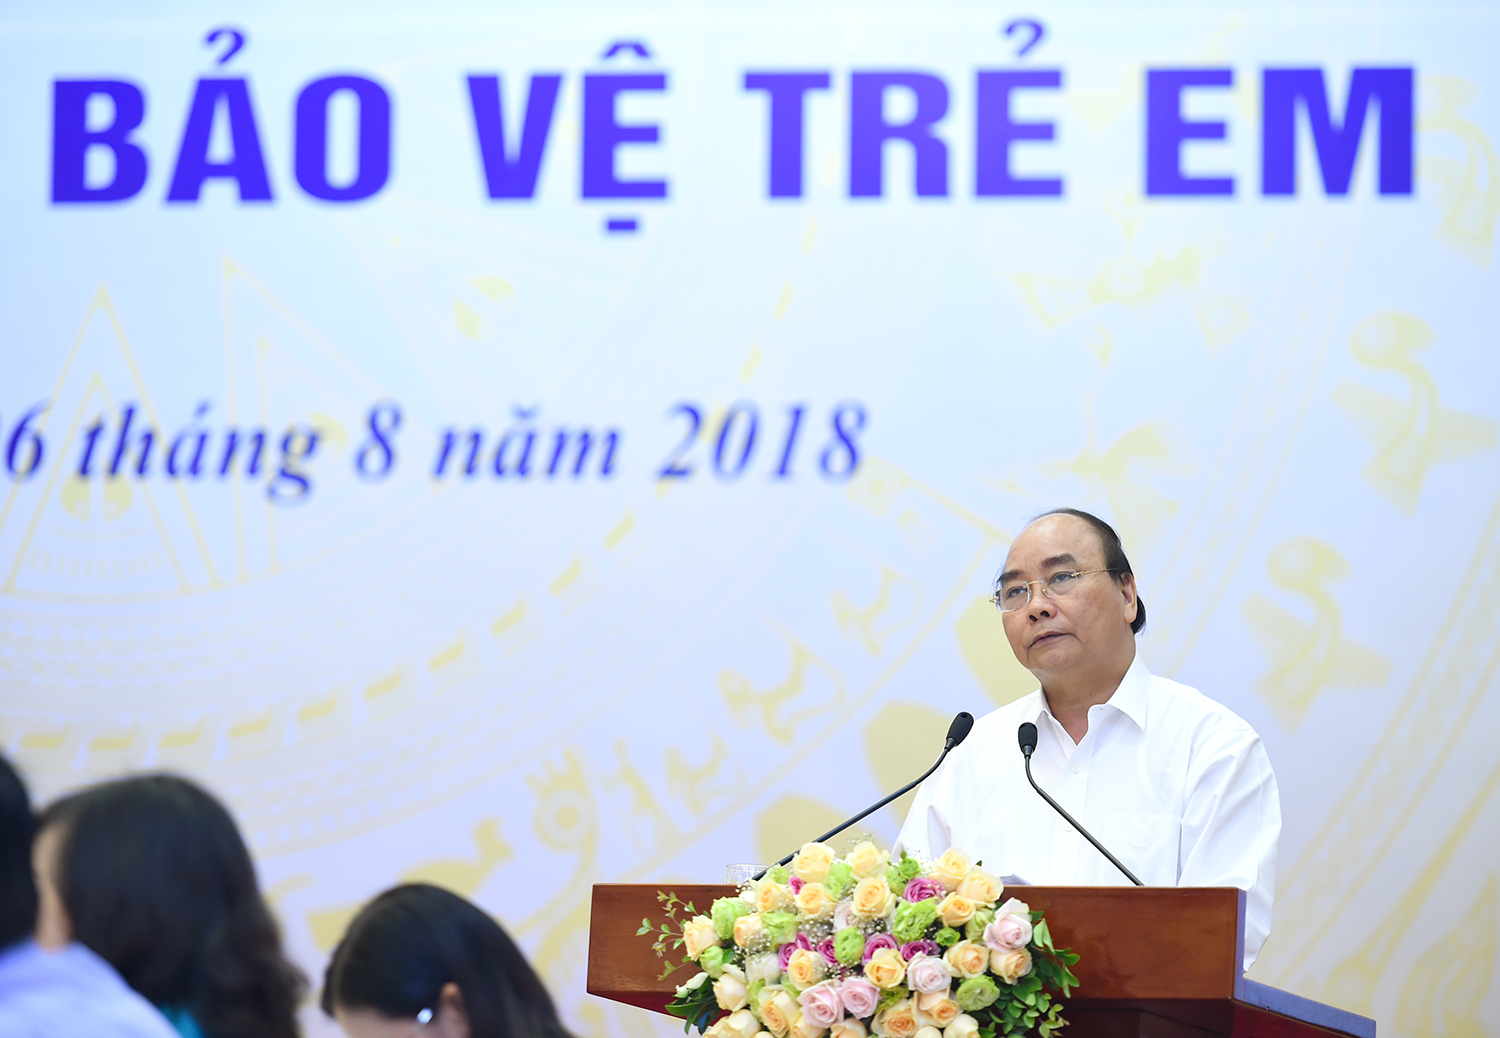 Thủ tướng đặc biệt quan tâm tới công tác bảo vệ trẻ em - Ảnh: VGP/Quang Hiếu